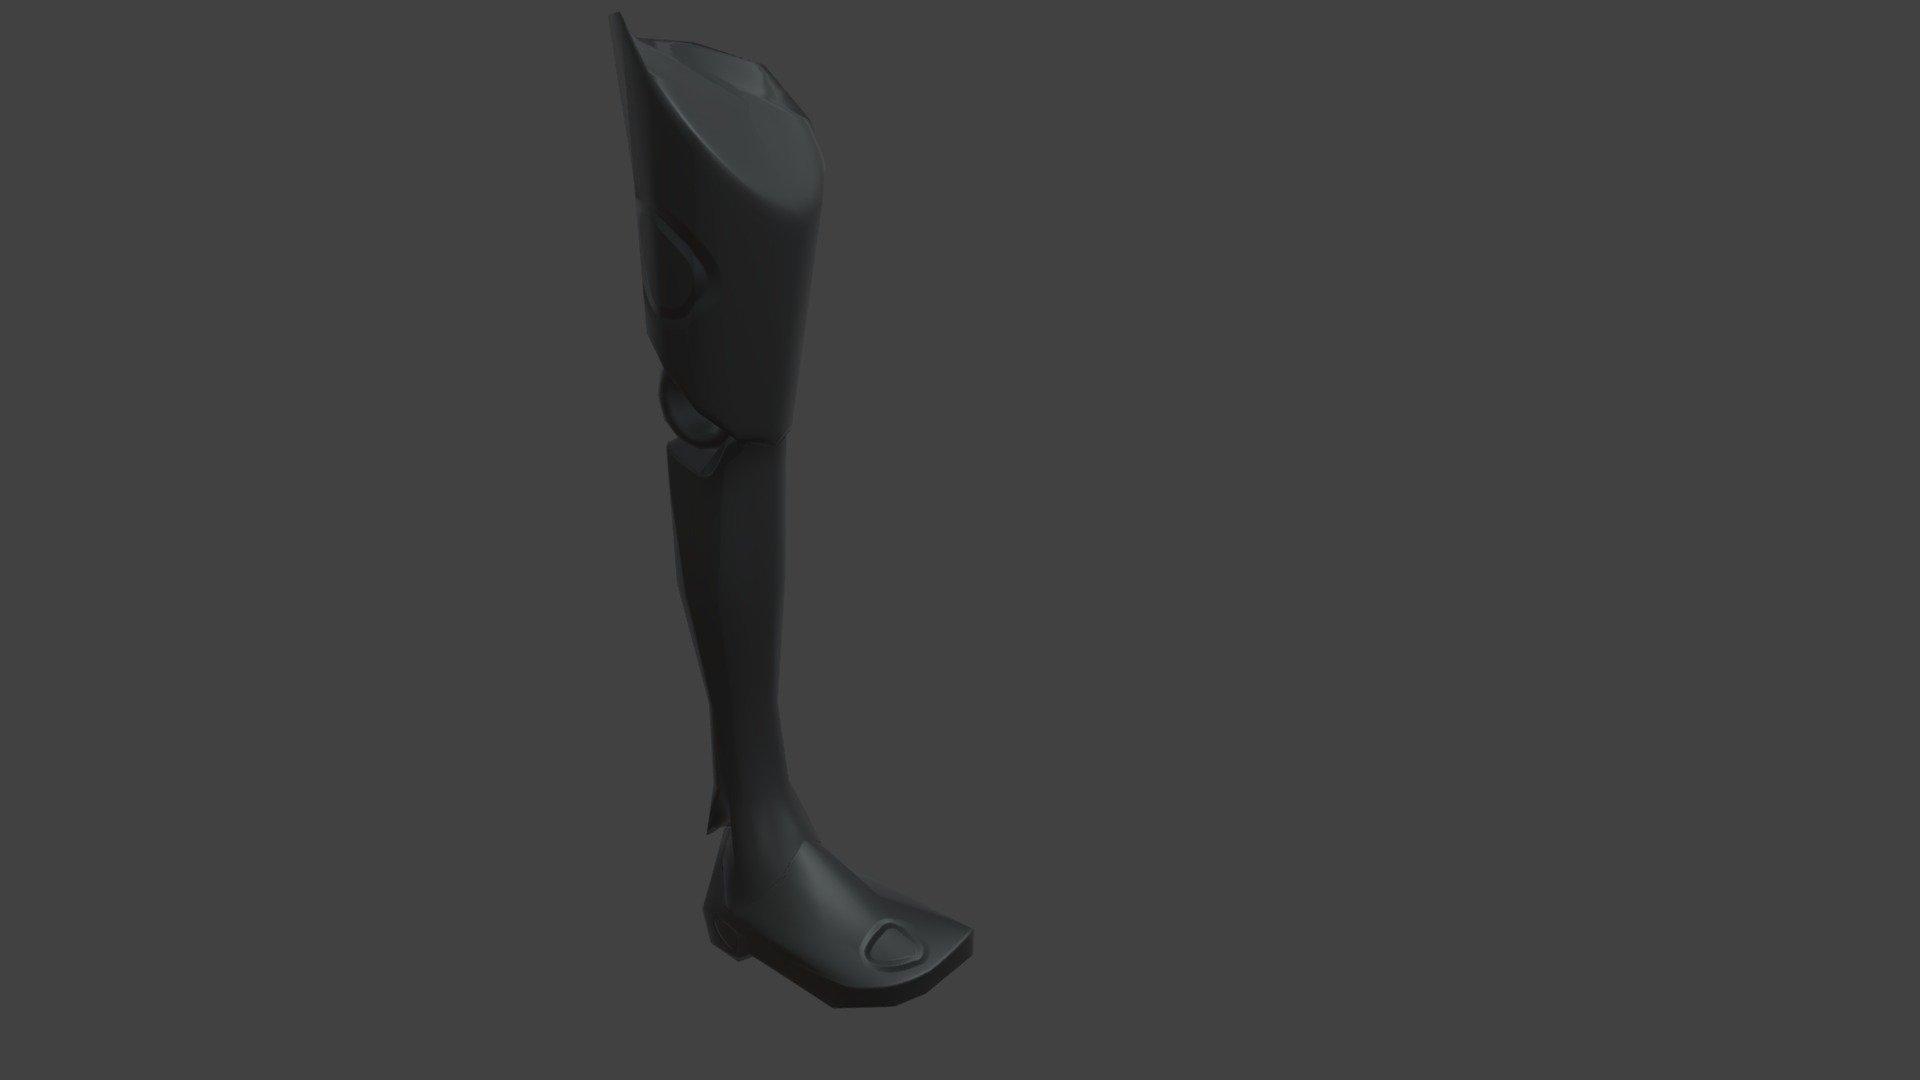 2DAE2E - High Poly Prosthetic Leg Version 2 3d model